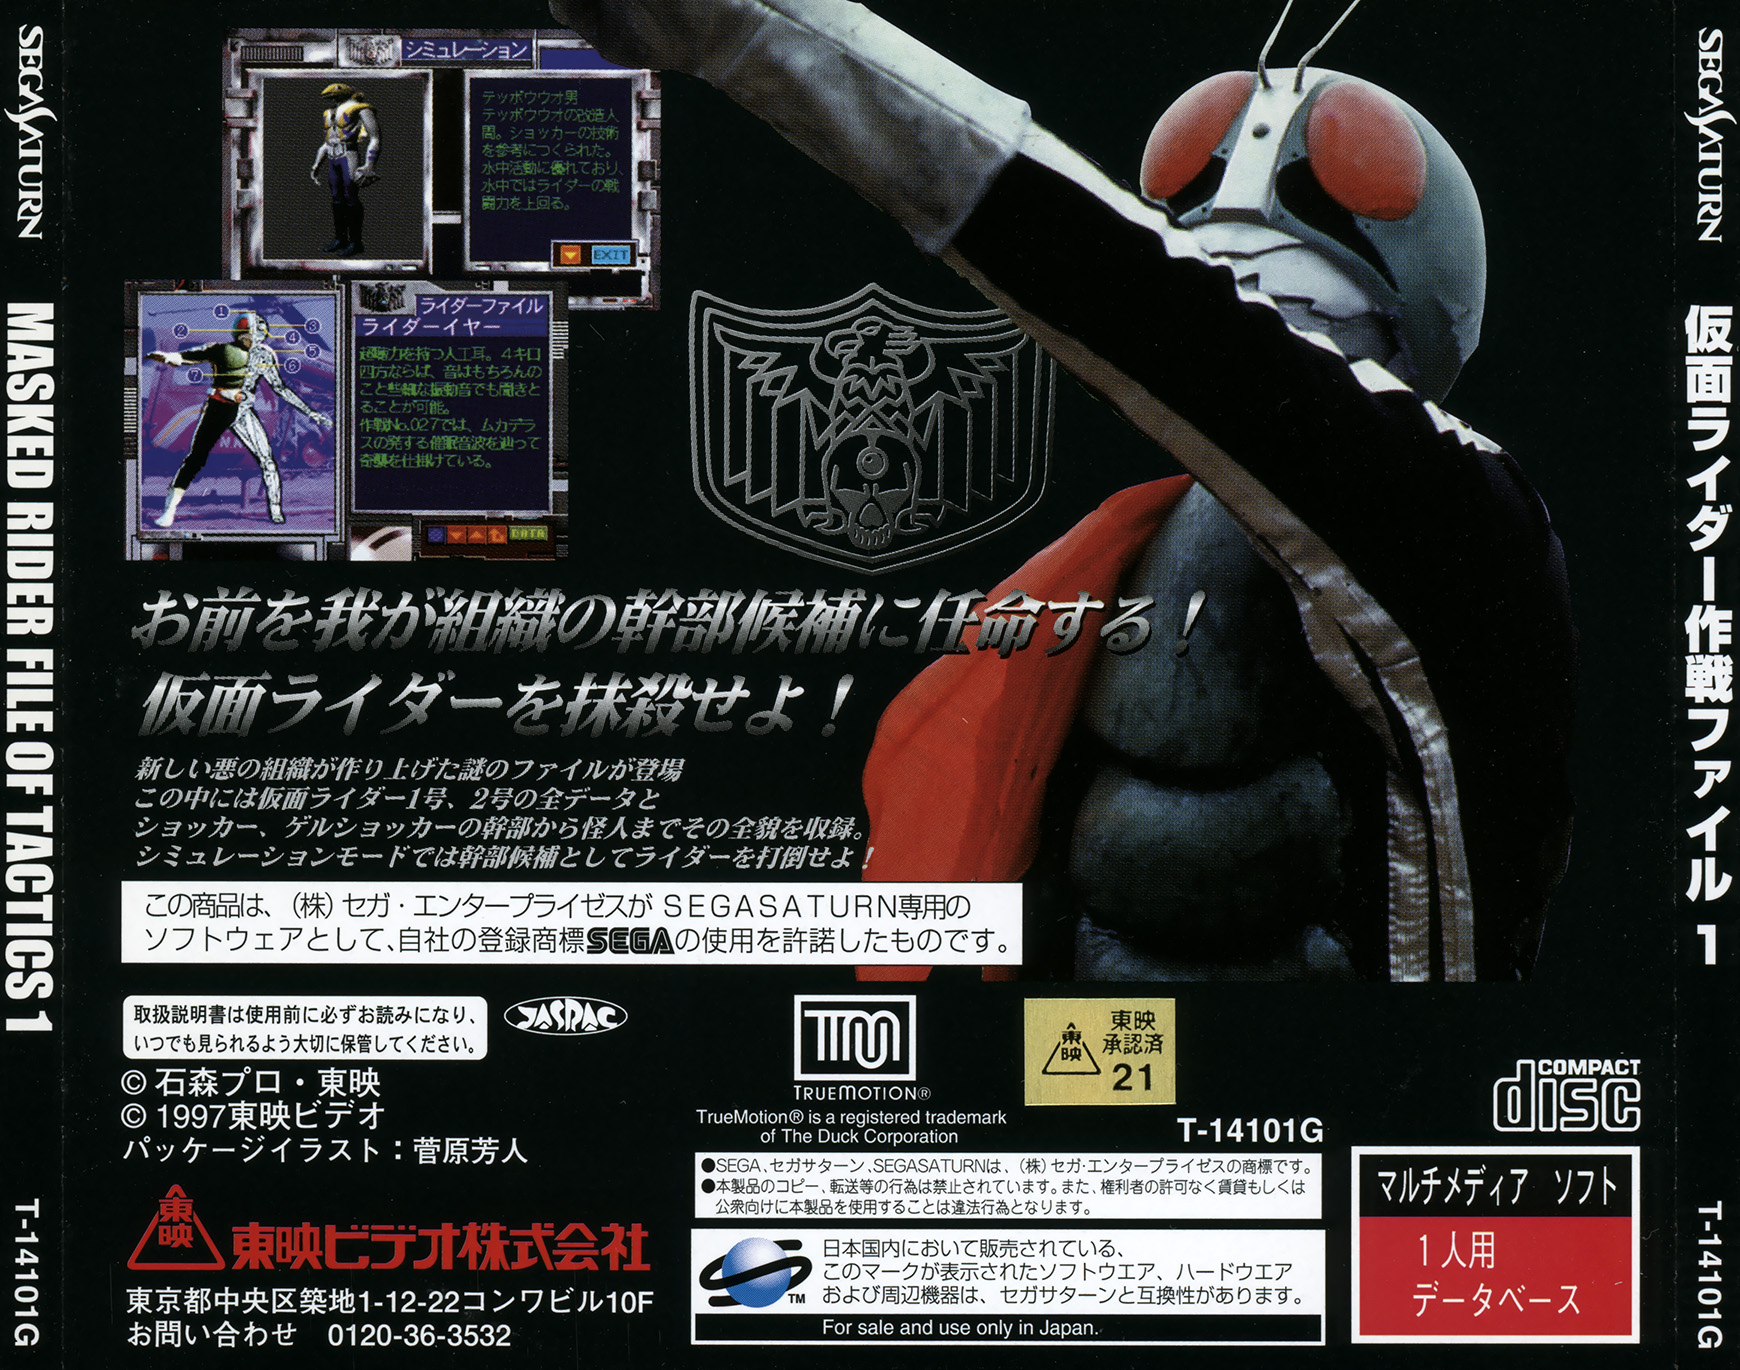 Kamen Rider: Sakusen File 1 Details - LaunchBox Games Database